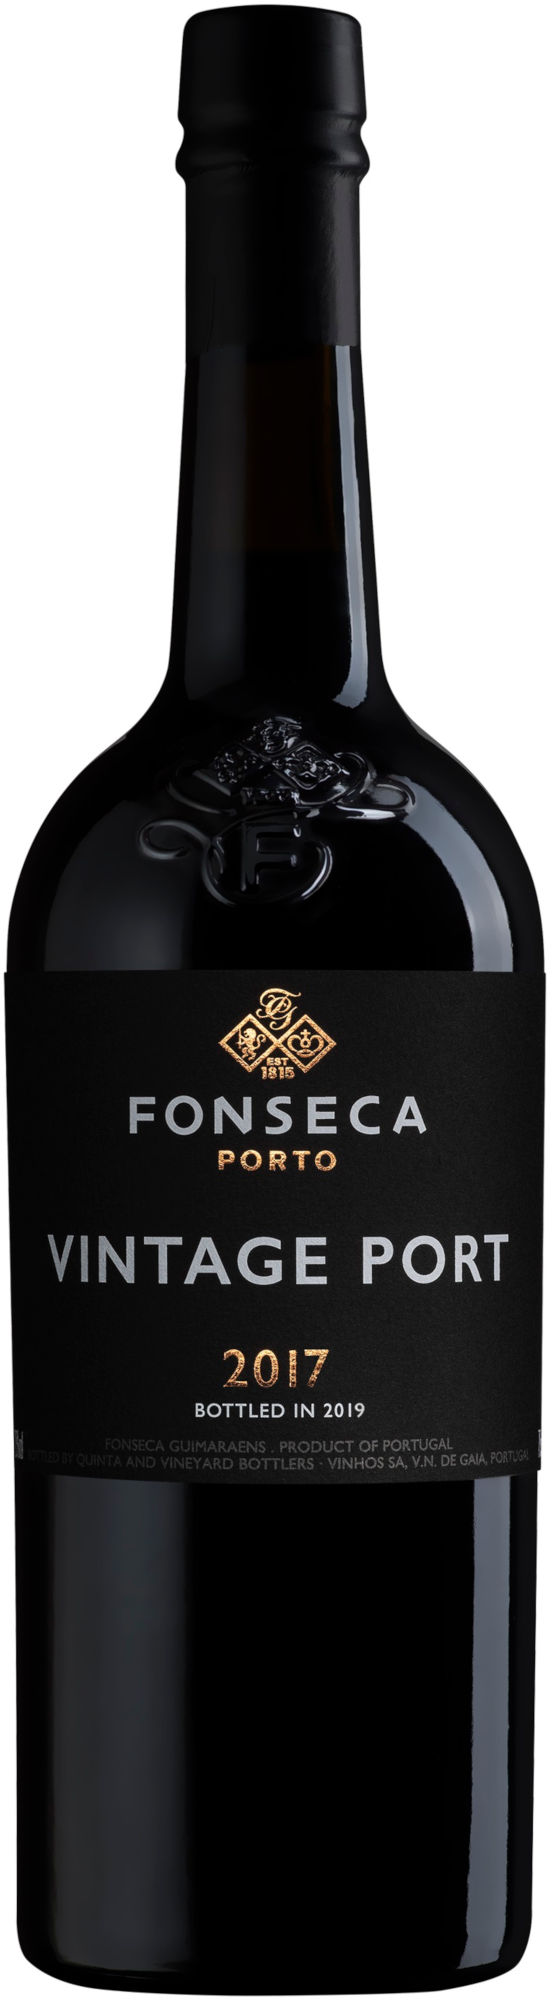 Fonseca-Vintage-Port-2017